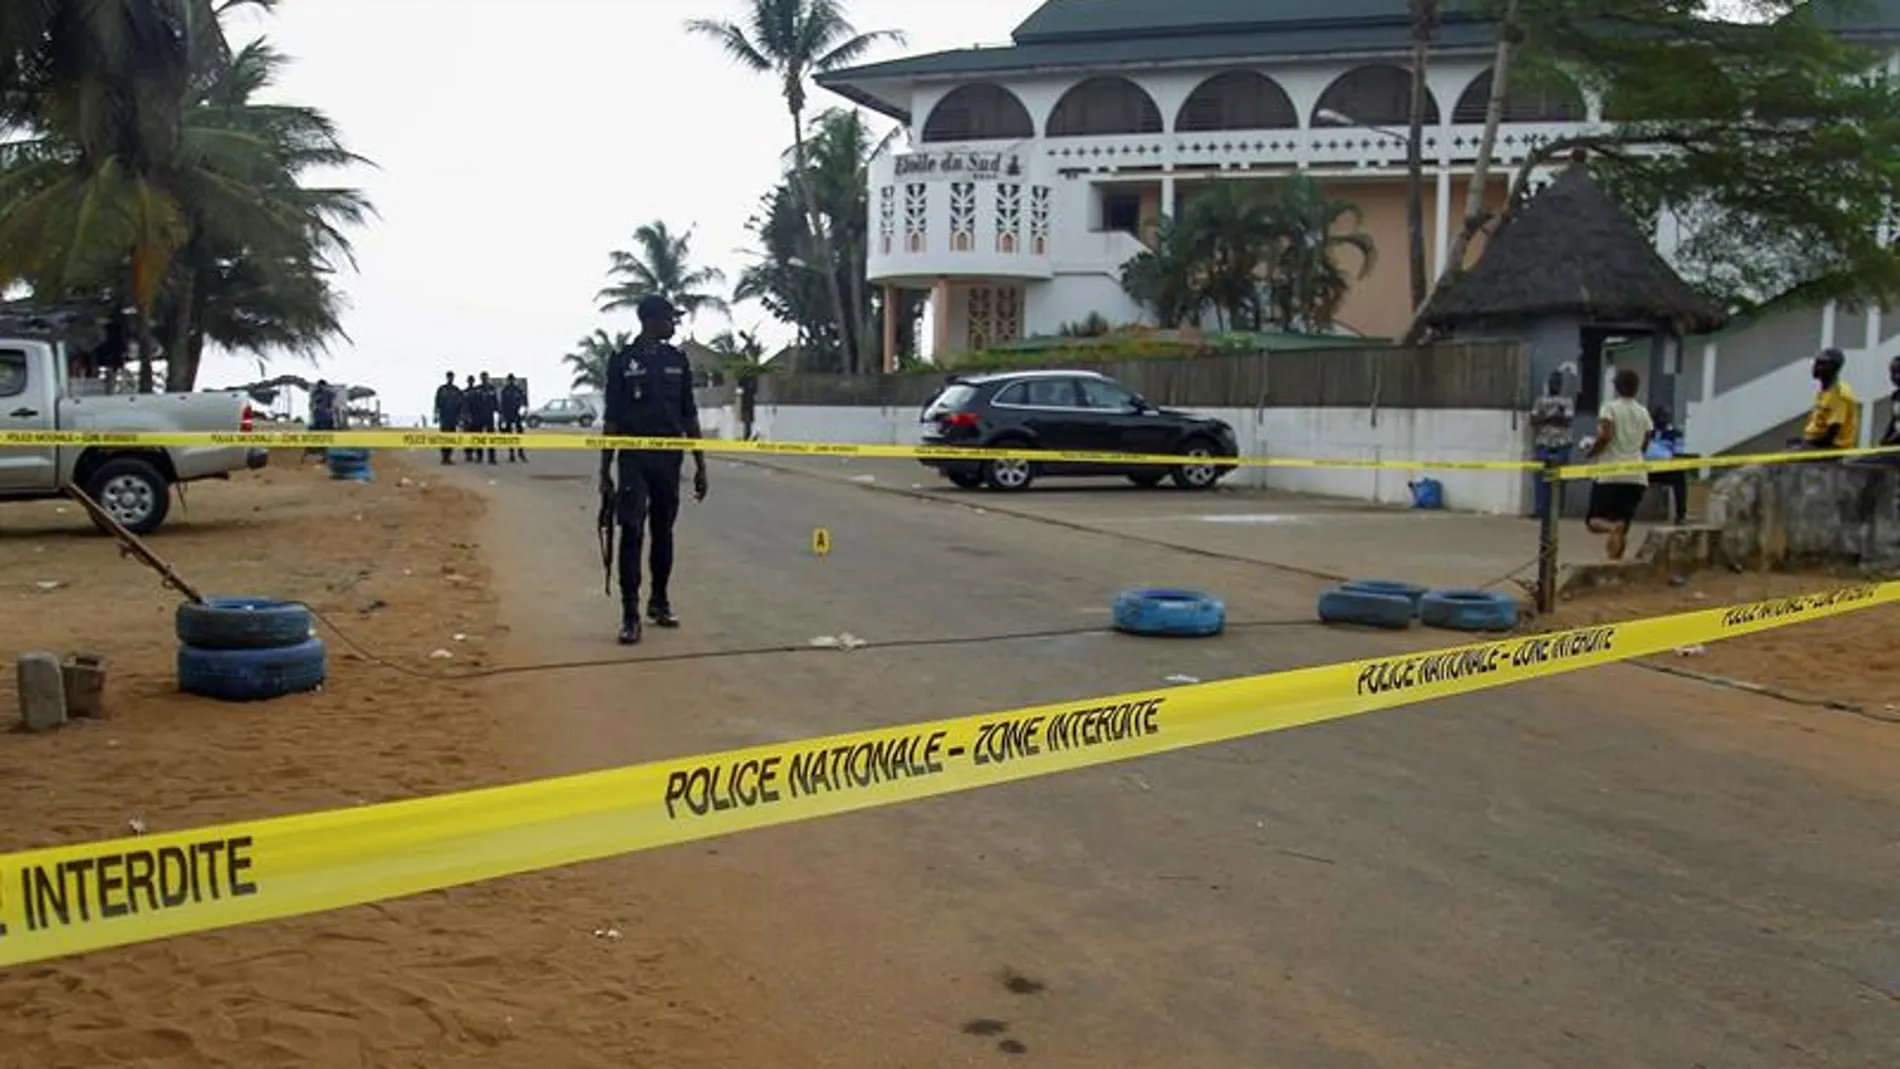 Cordón policial tras el atentado en Costa de Marfil